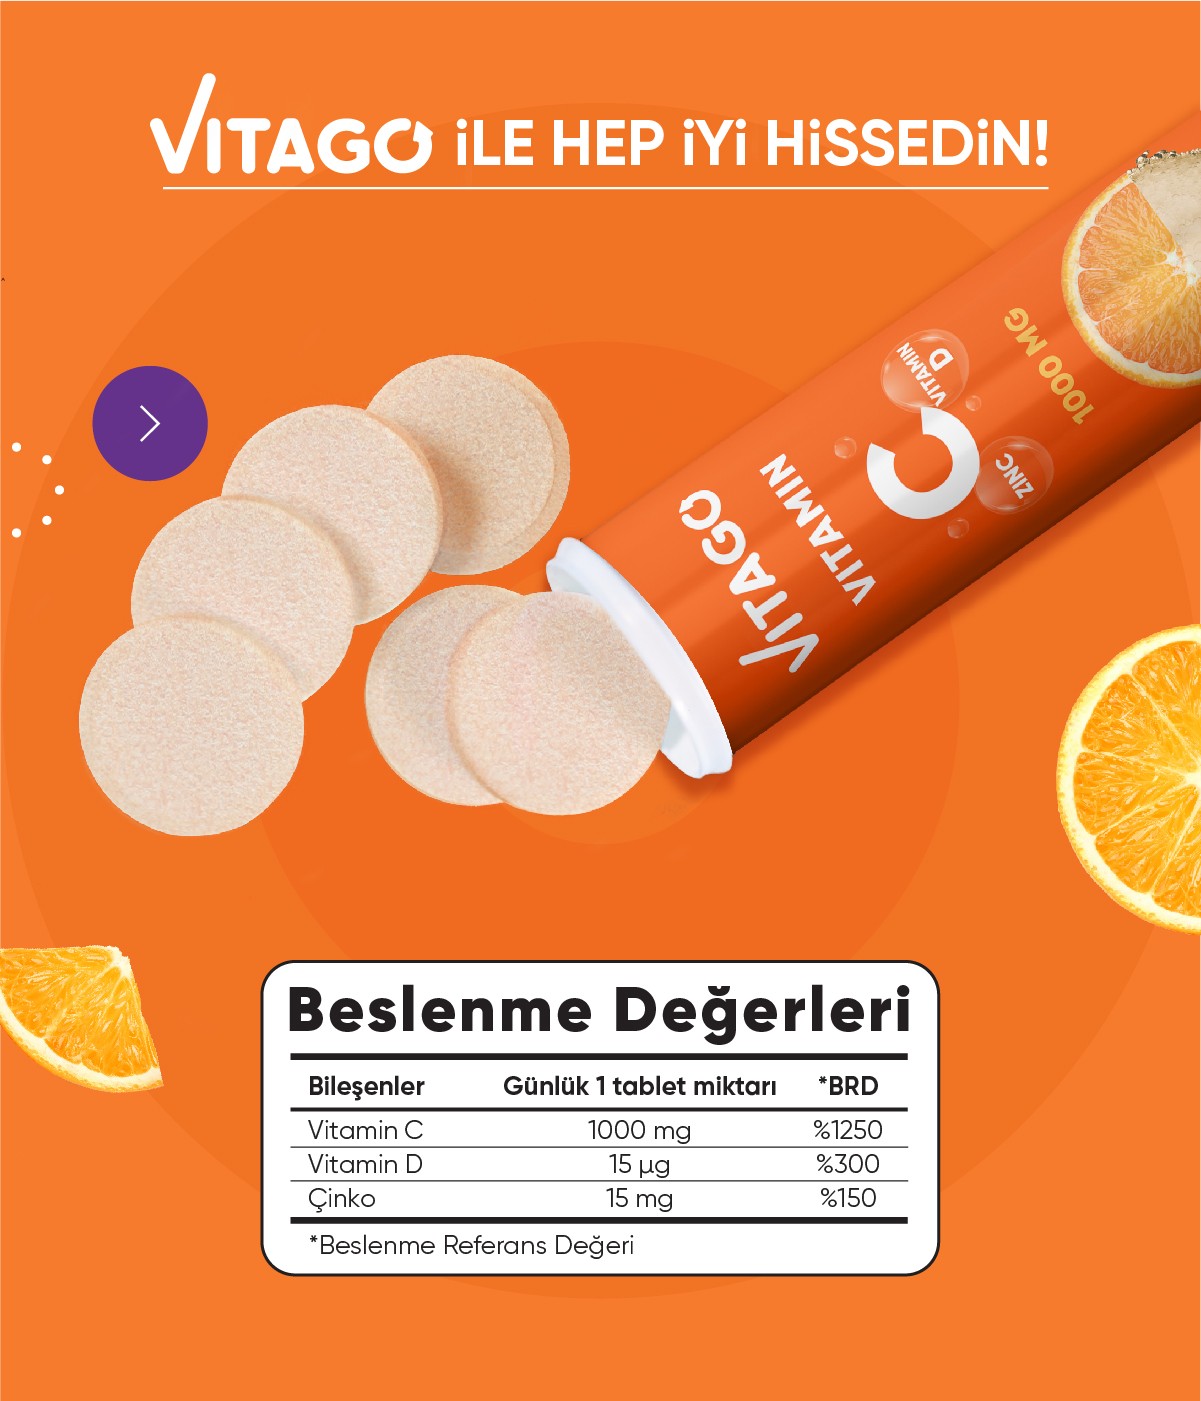 Vitago 20'li Vitamin C, Vitamin D, Çinko İçeren Efervesan Tablet Takviye Edici Gıda